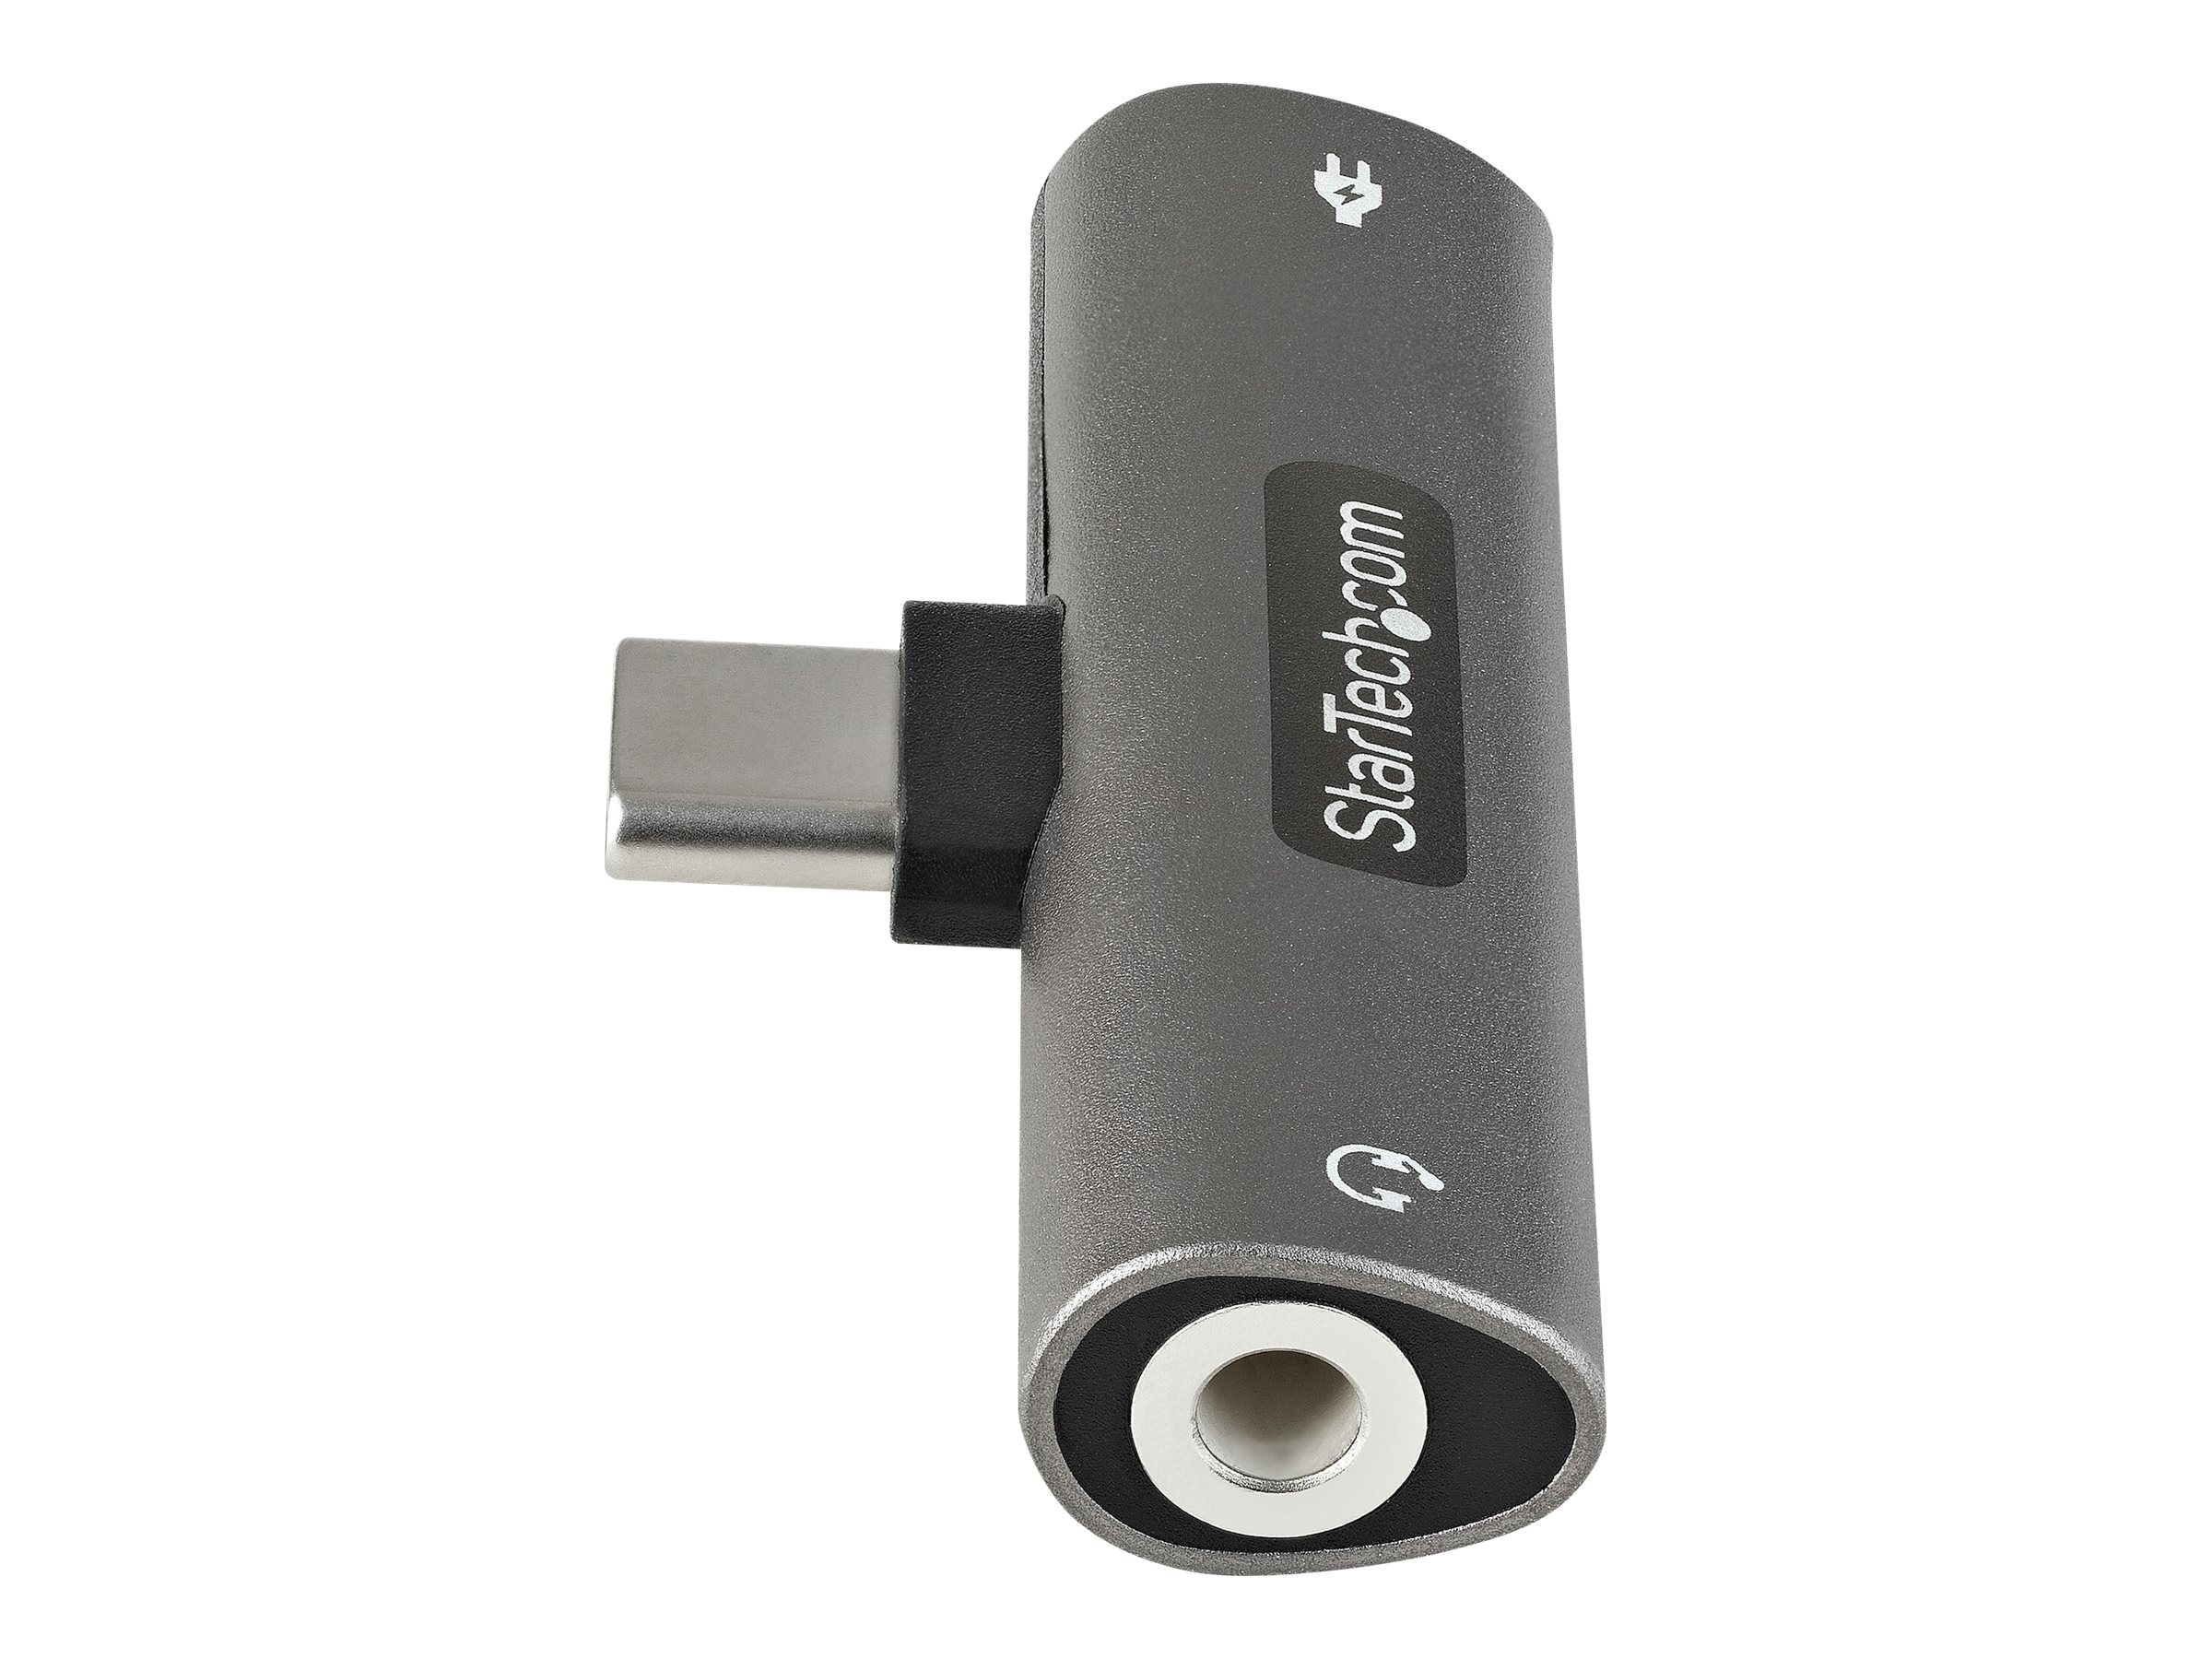 Adaptateur Audio USB vers Prise Jack 3,5 Mm, Câble Convertisseur TRRS USB A  vers 3,5 Mm, Câble USB vers AUX Compatible avec Casque, PC Windows